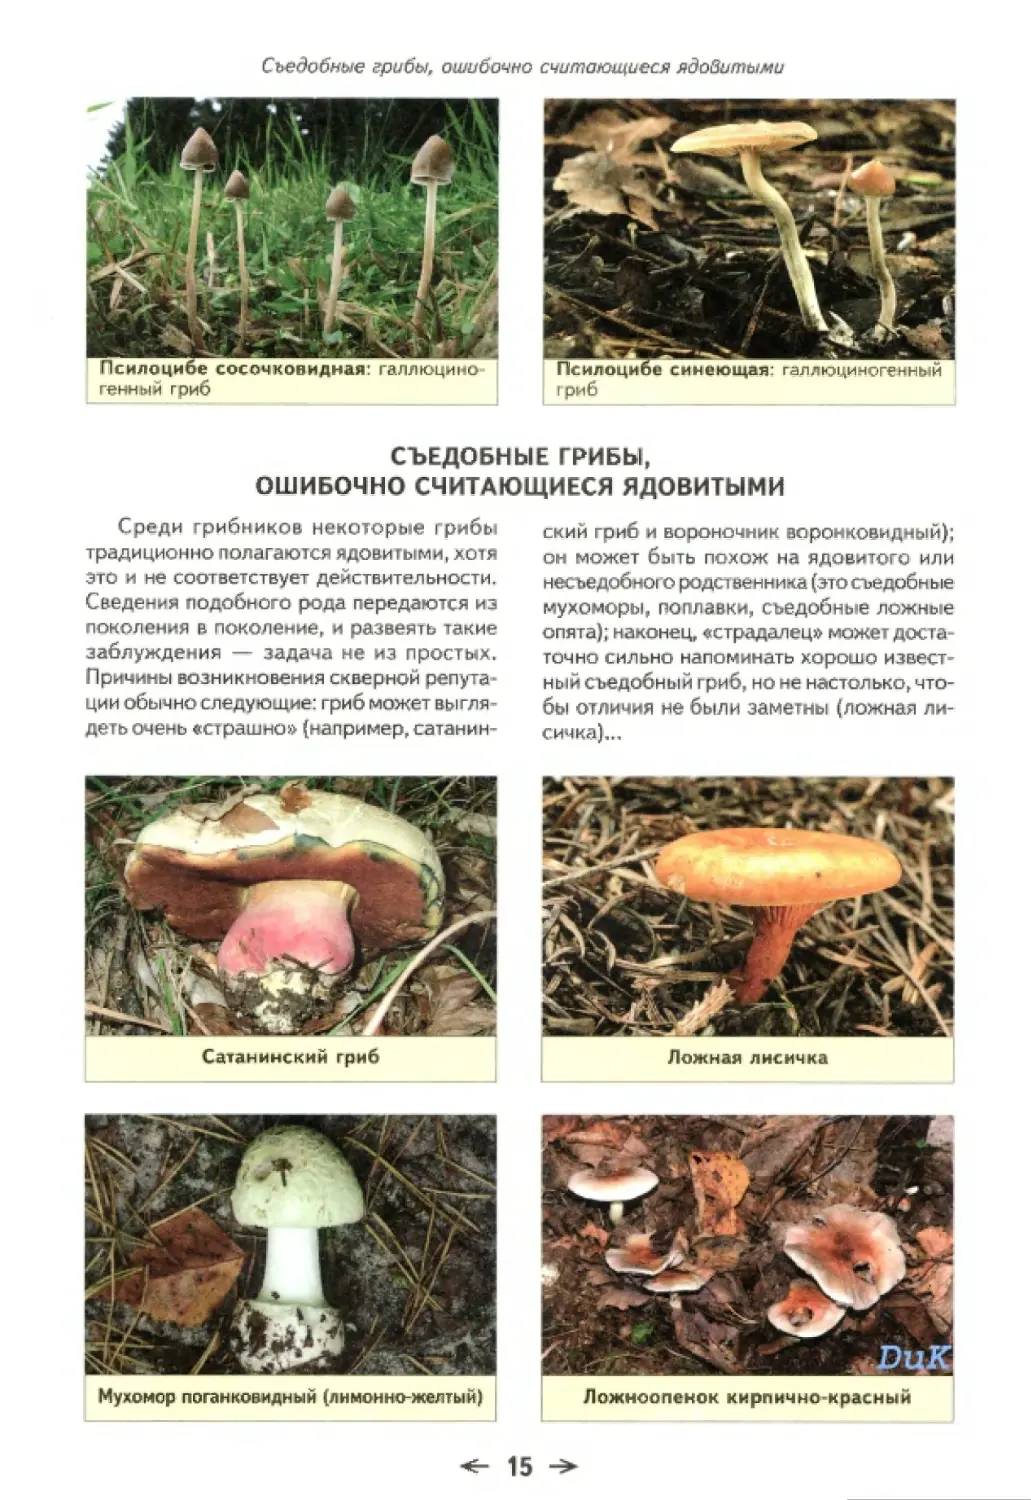 Съедобные грибы Орловской области название